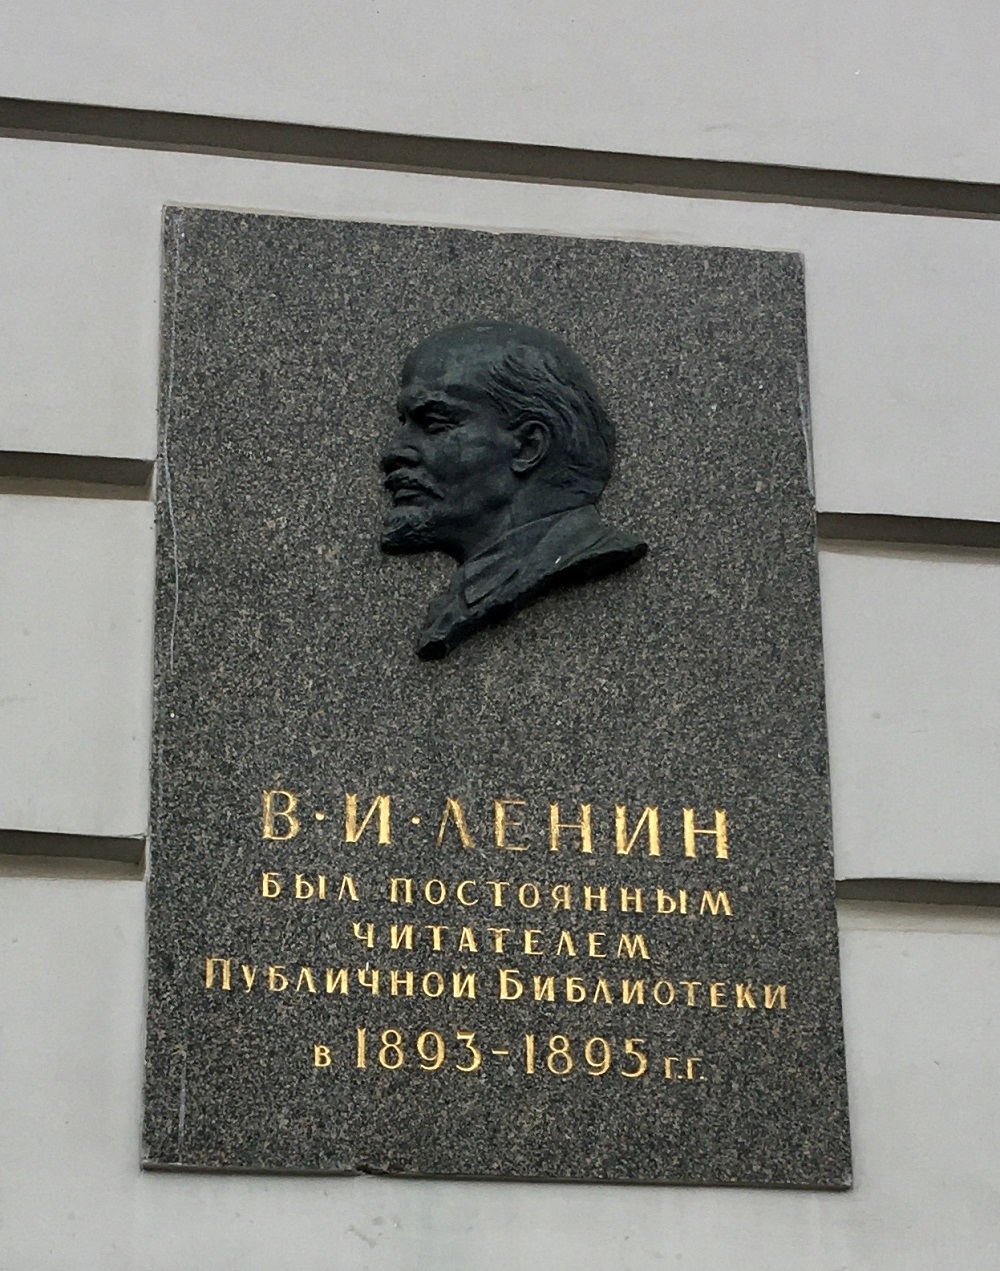 Sankt Petersburg, Площадь Островского, 1-3 (корпус Соколова). Sankt Petersburg — Memorial plaques